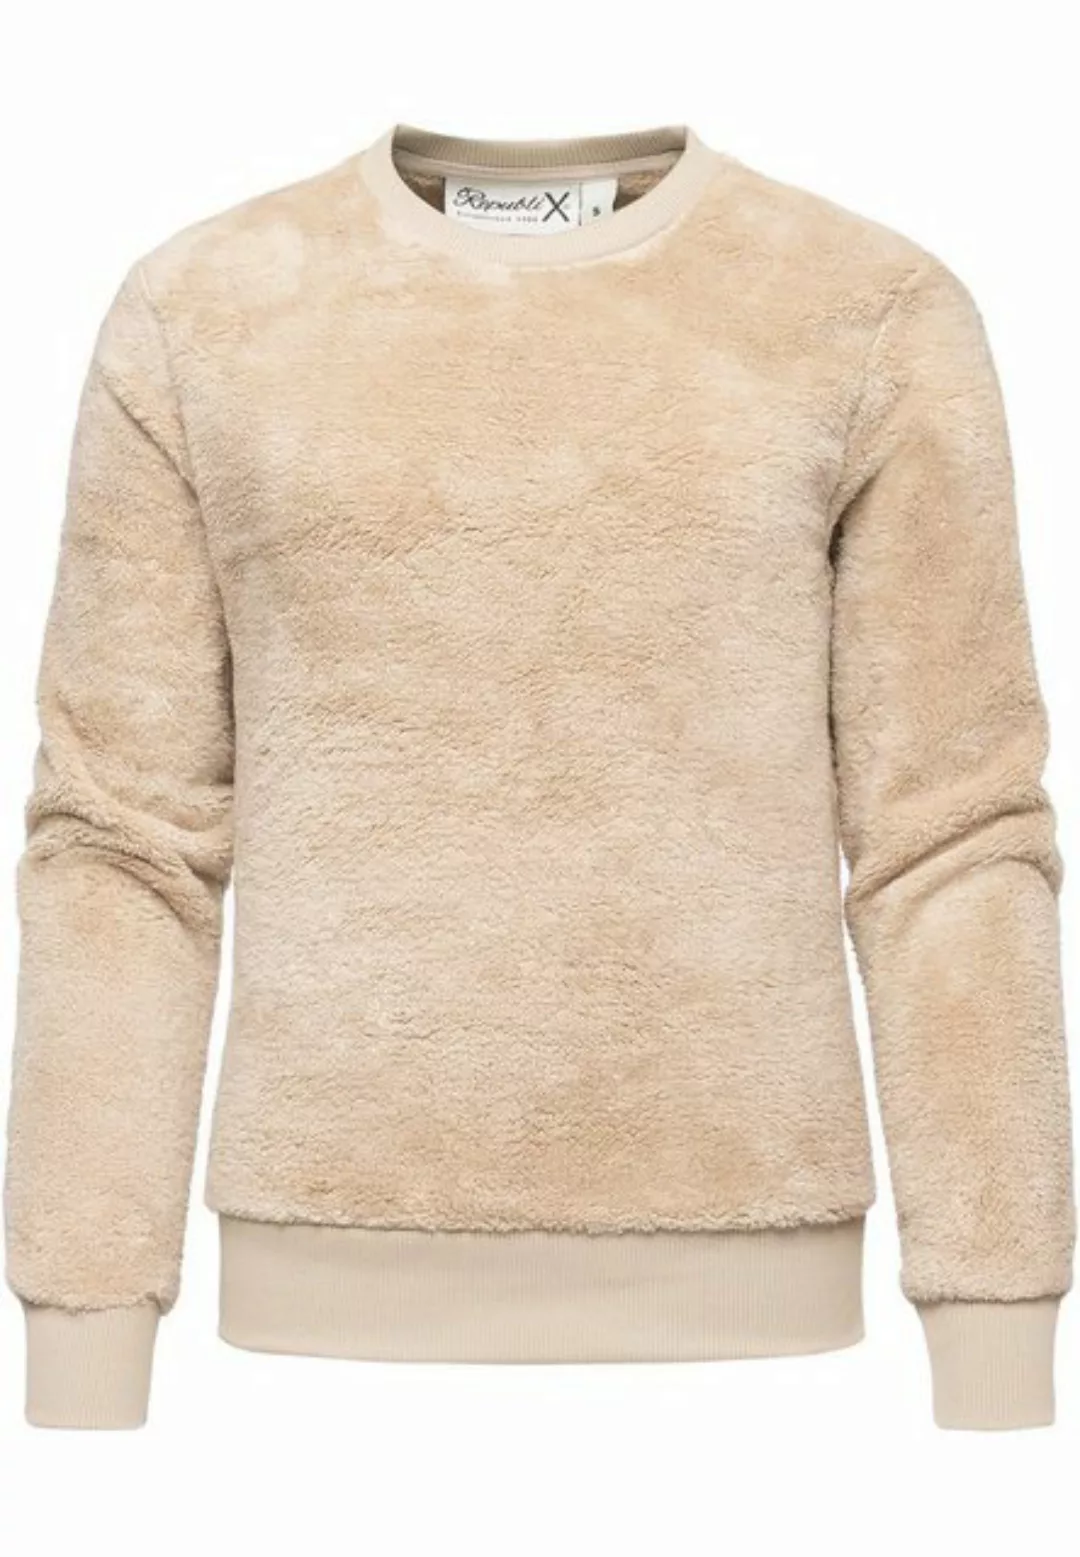 REPUBLIX Sweatshirt LUNA Damen Teddy Pulli Sweatjacke Plüsch Hoodie Pullove günstig online kaufen